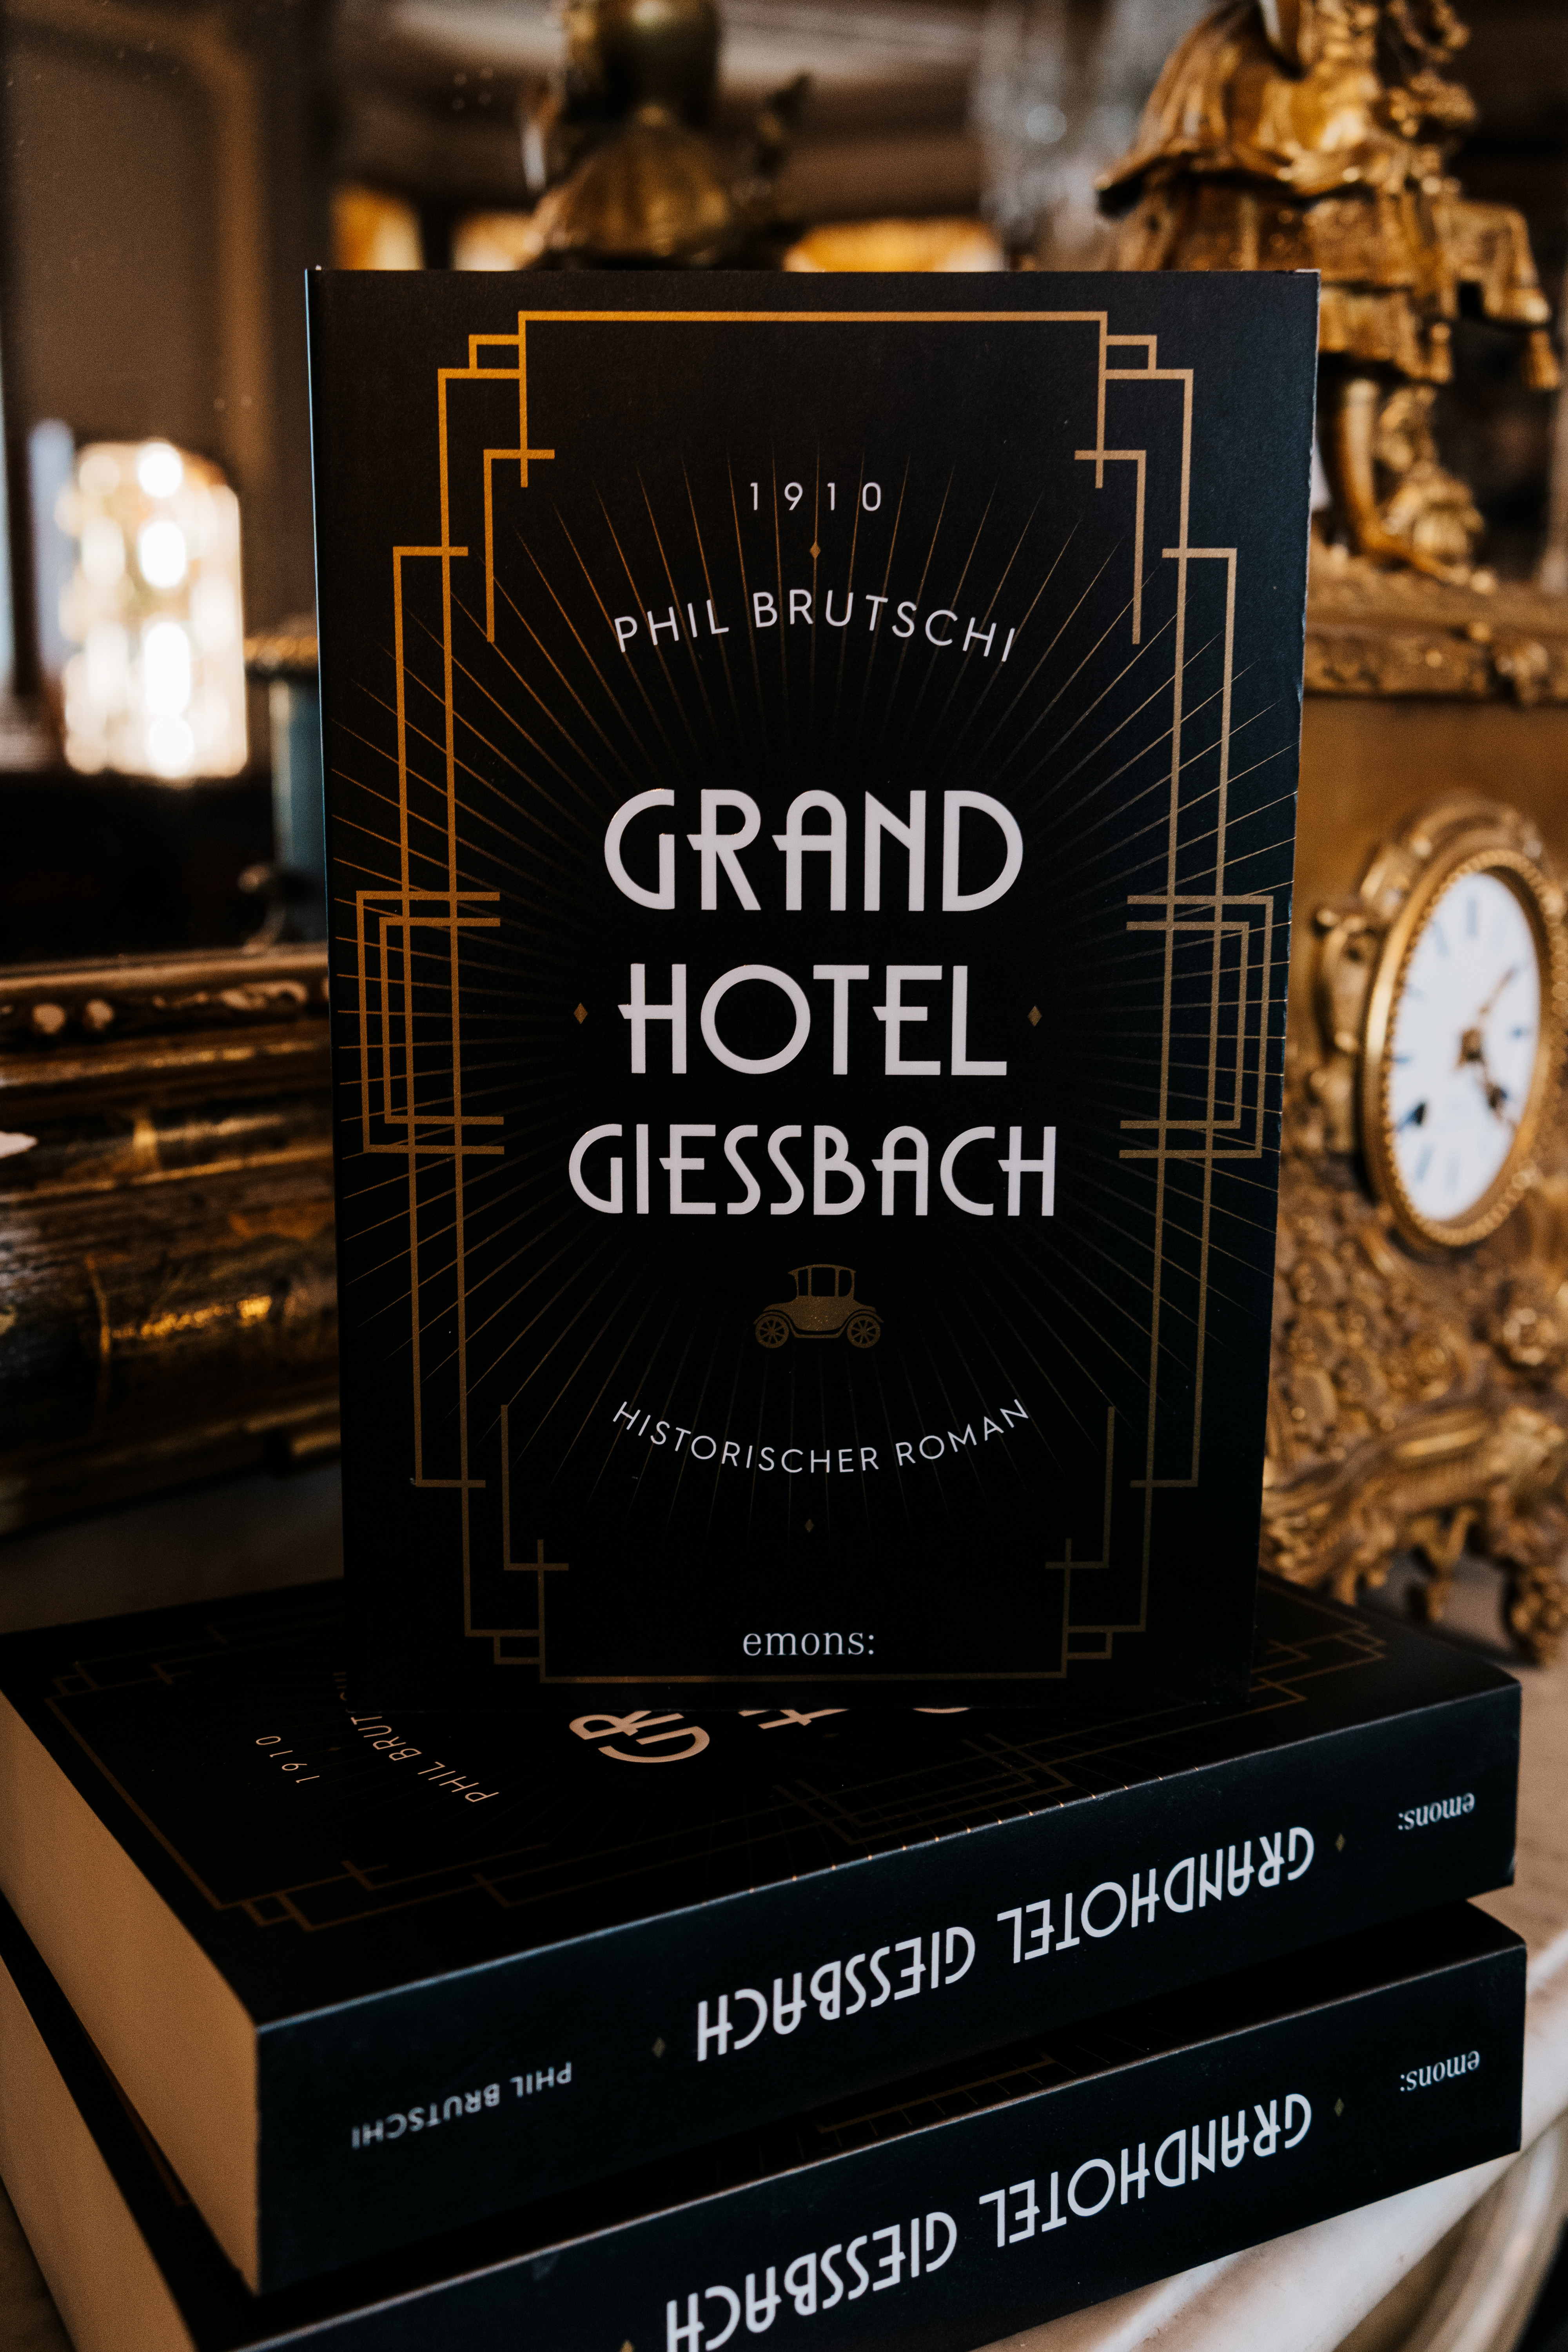 Grandhotel Giessbach - Roman von Phil Brutschi